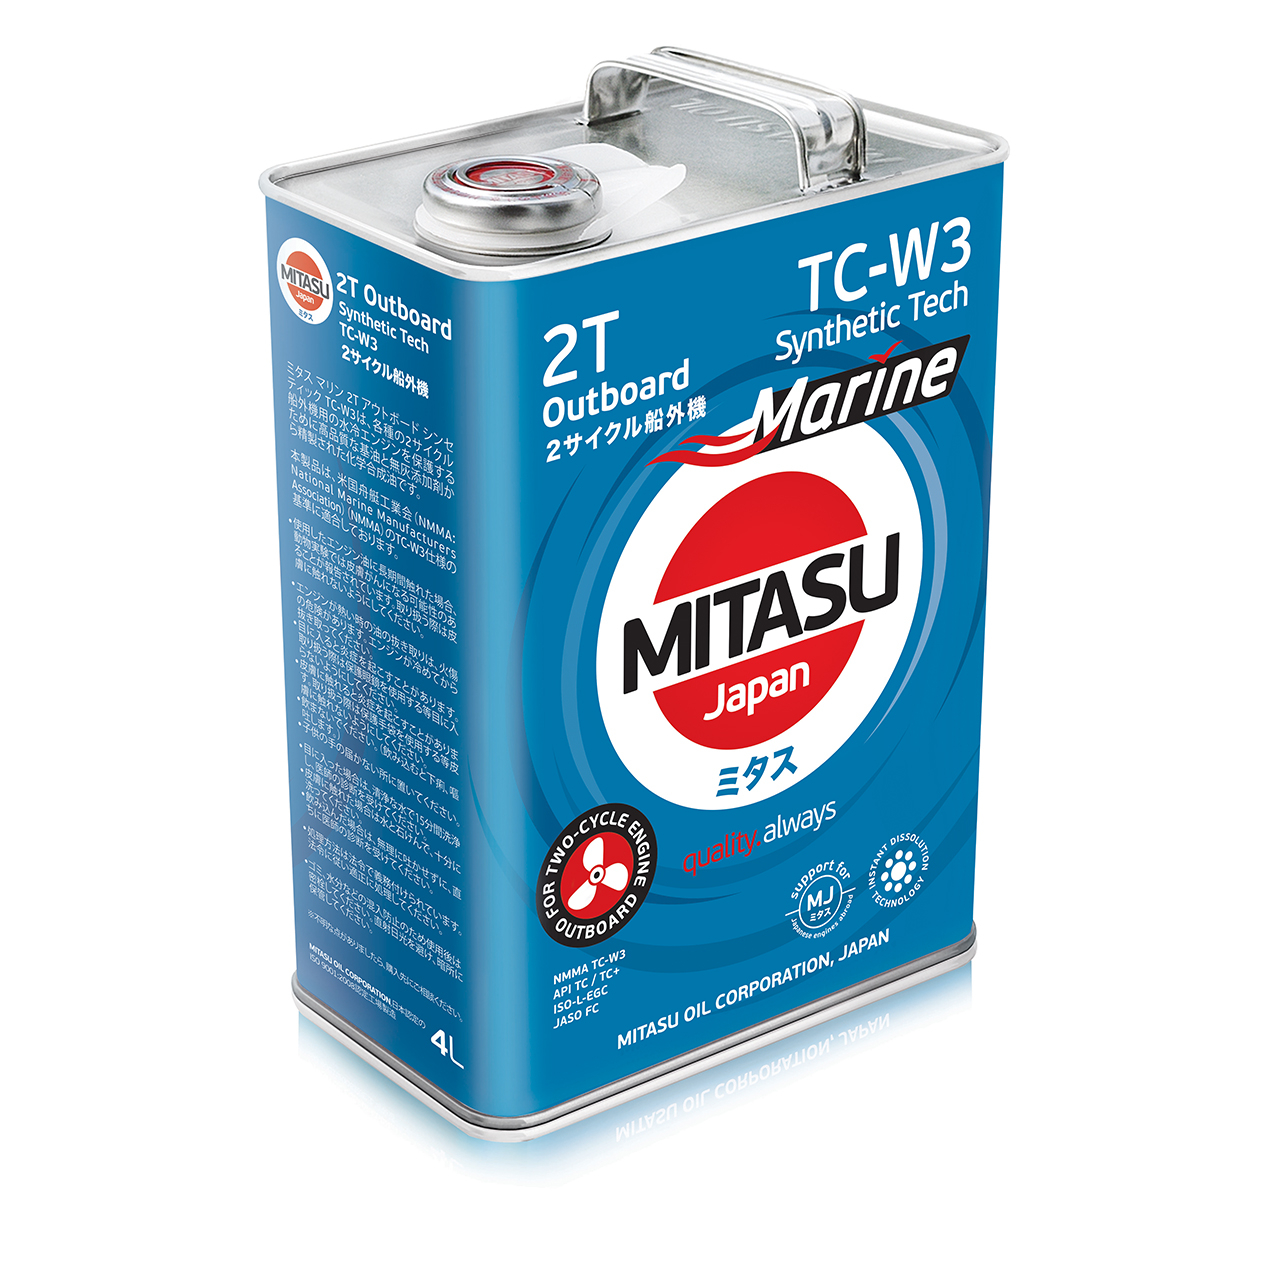 Купить запчасть MITASU - MJ9234 Масло моторное MITASU MARINE 2T Outboard Sinthetic TC-W3 4л синтетика для двухтактных двиг MJ923